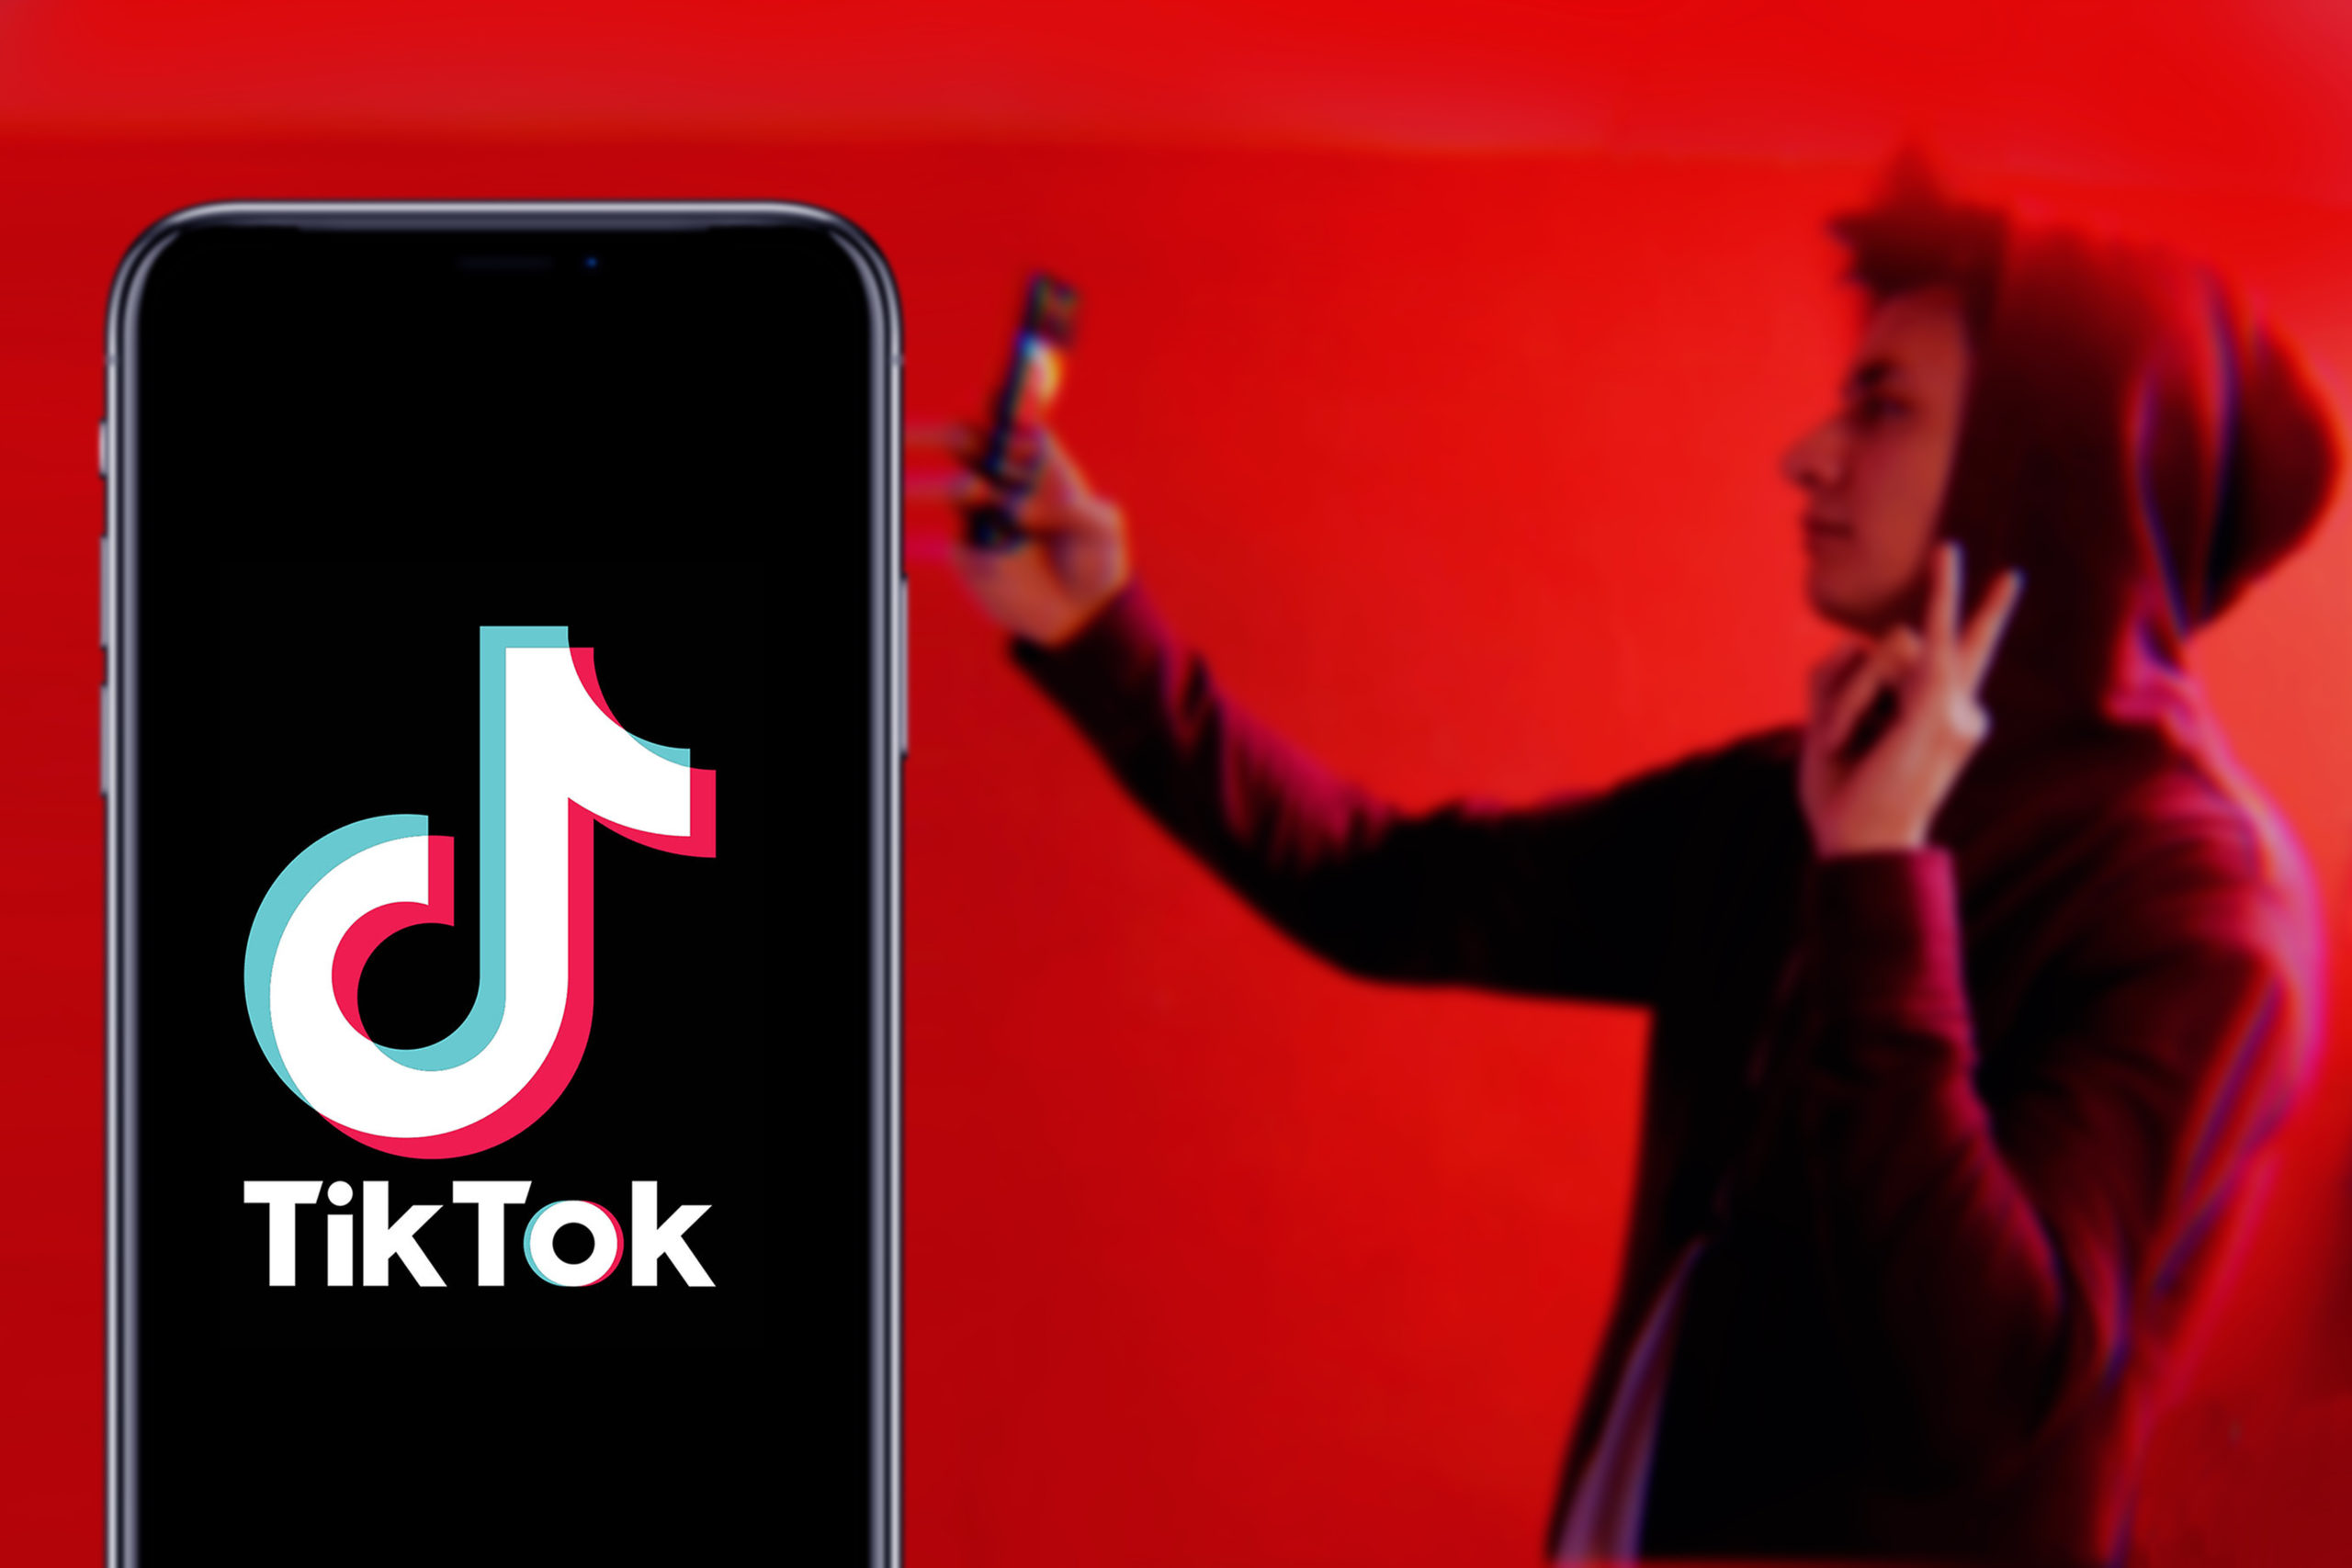 Le boom de TikTok auprès des quarantenaires : interview sur Radio Contact et Bel RTL